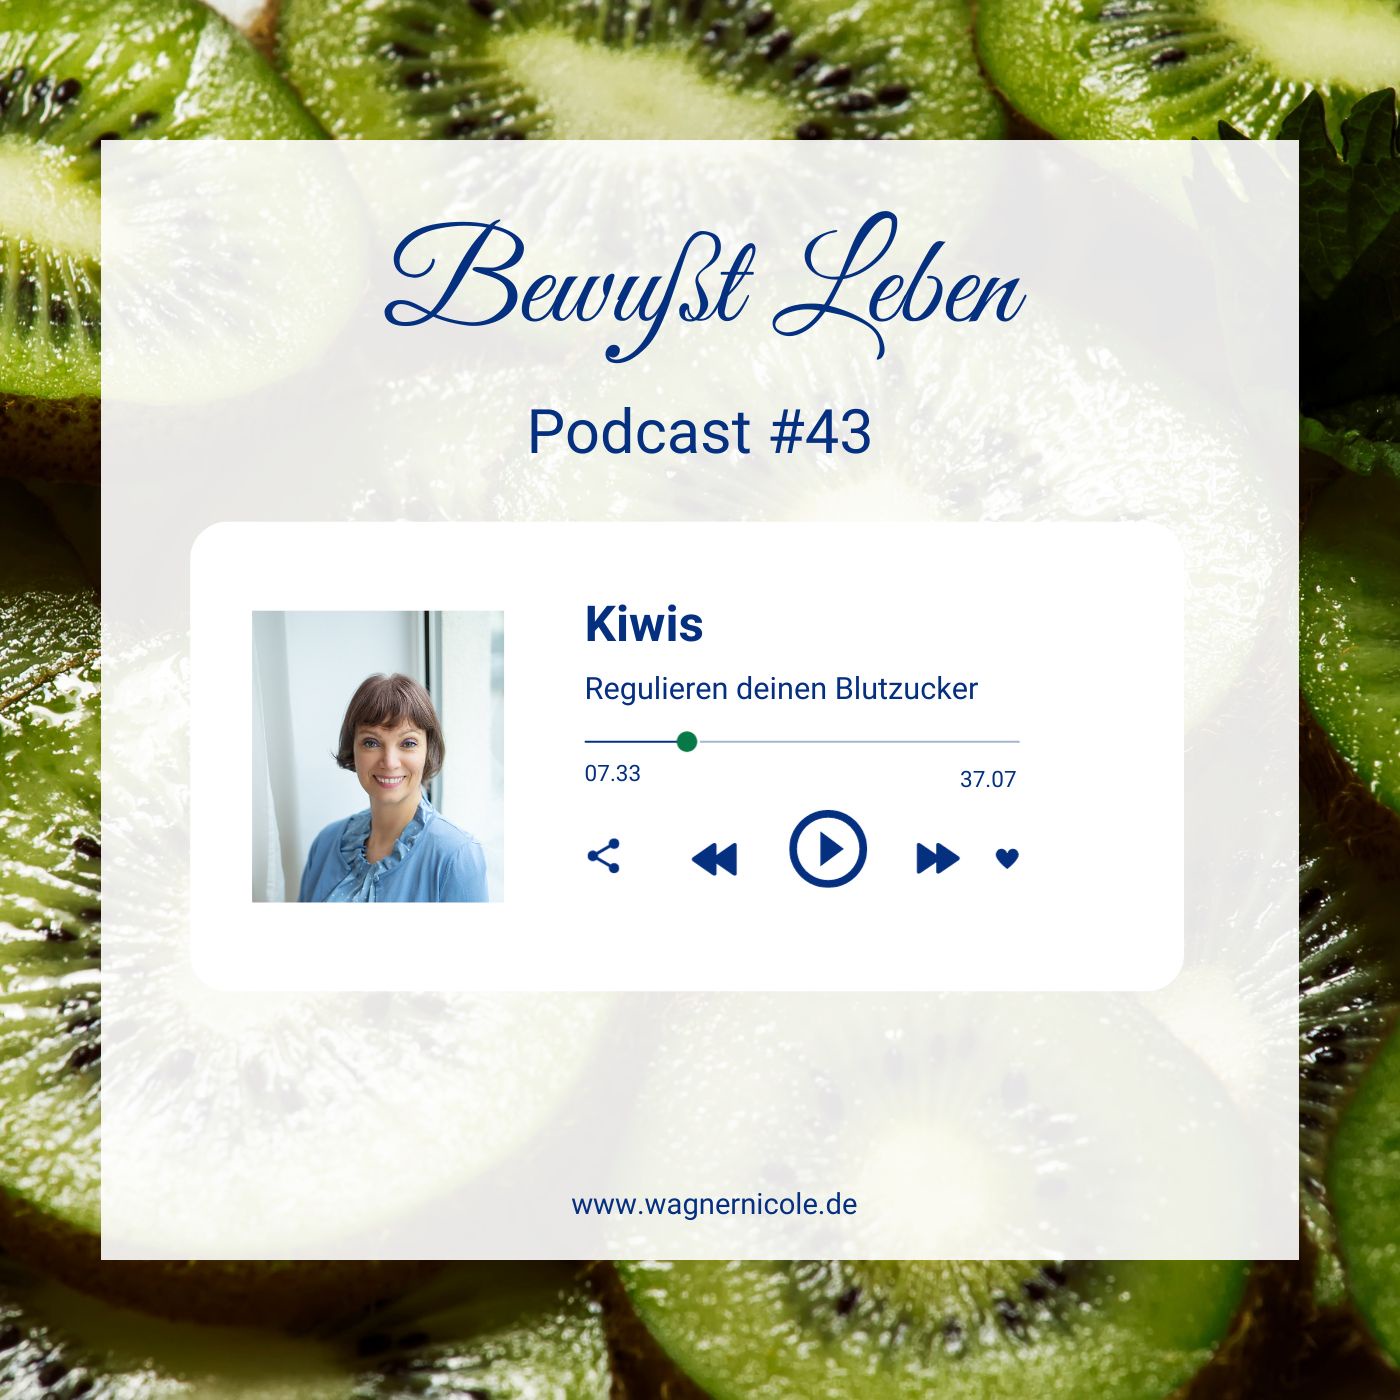 Kiwis regulieren deinen Blutzucker I Inkl. Rezept mit ErdbeerDattel Dip I Podcast #43